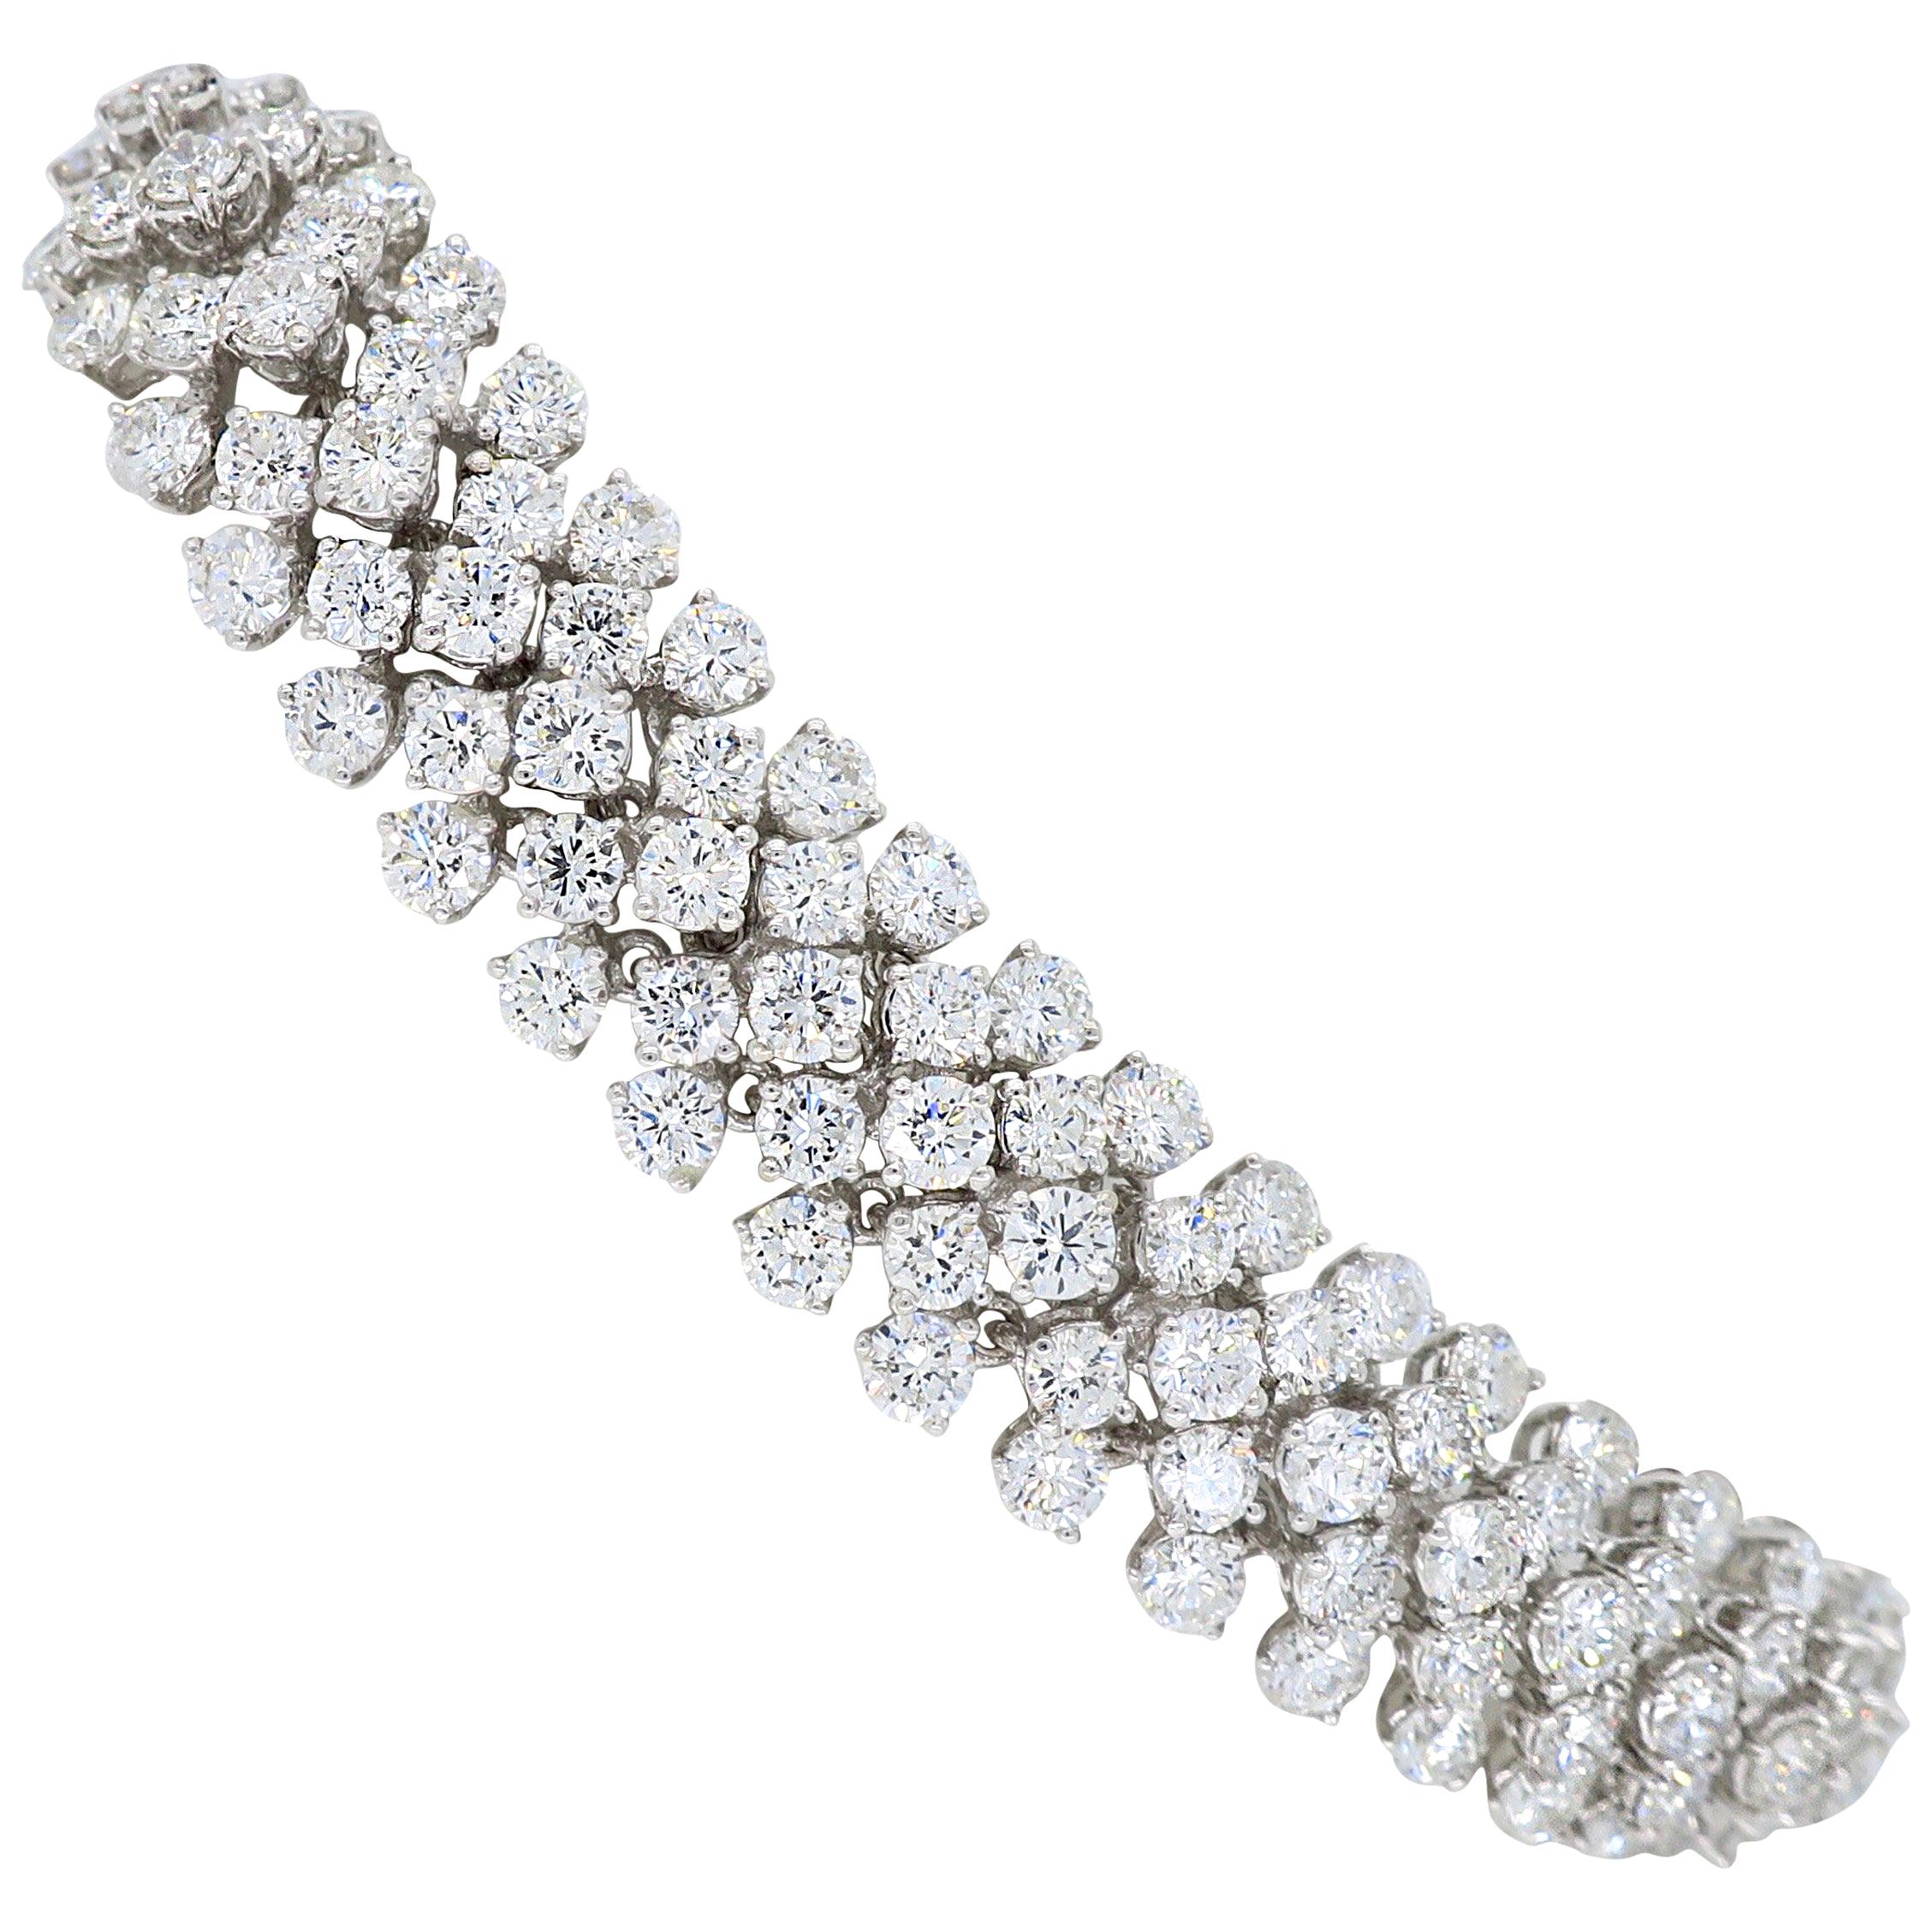 14.61 Carat Diamond Bracelet Made in 18 Karat White Gold